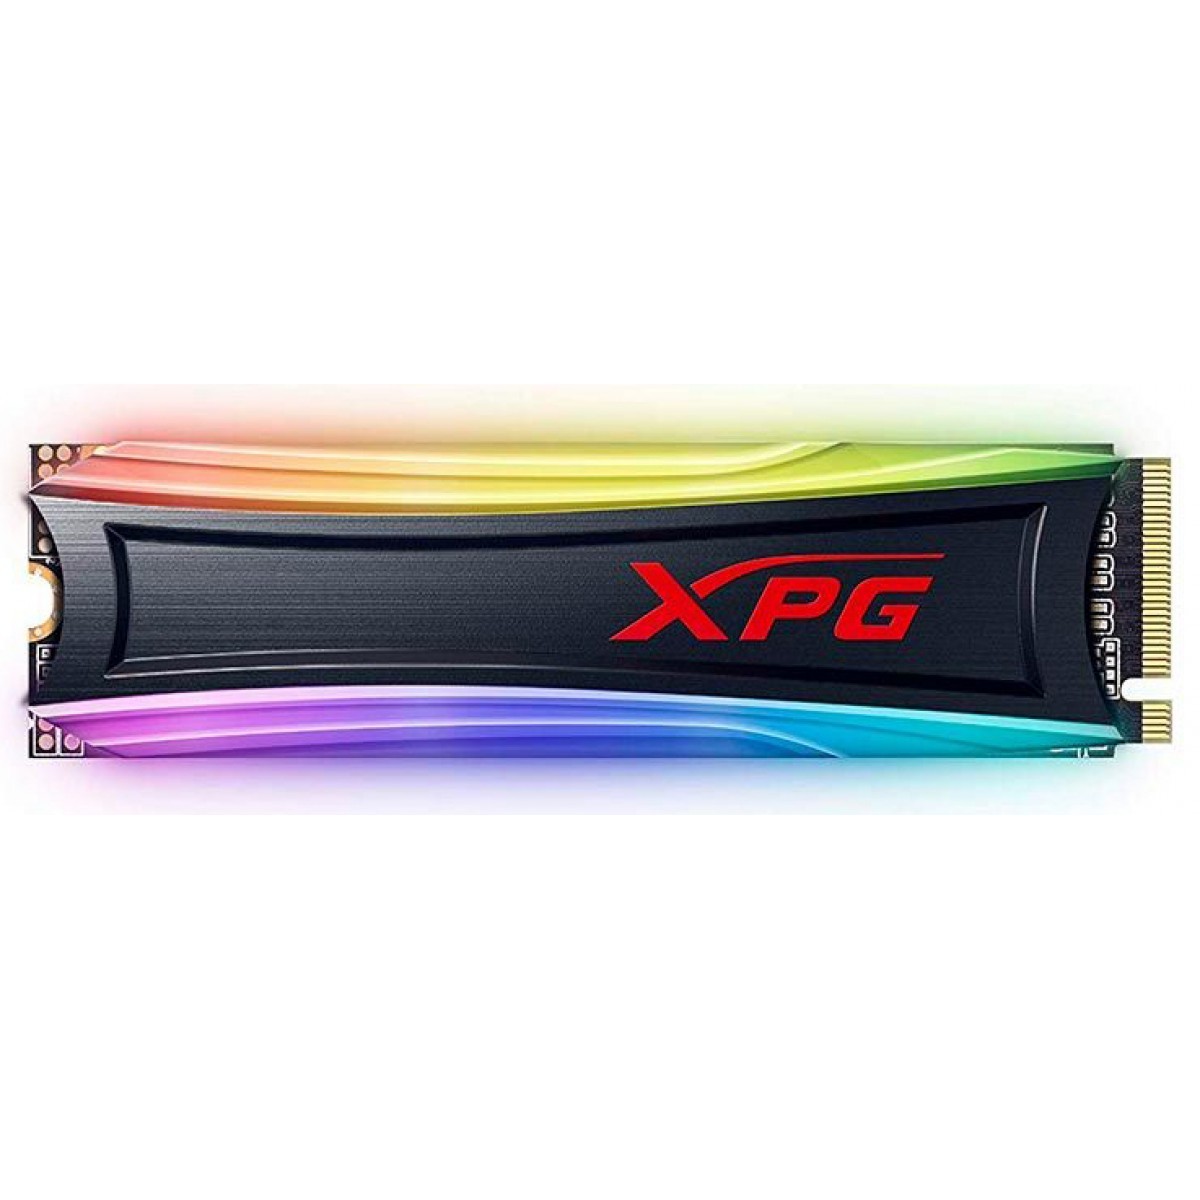 SSD XPG Spectrix S40G RGB, 512GB, M.2 2280, NVMe, Leitura: 3500MBs e Gravação: 1900MBs, AS40G-512GT-C